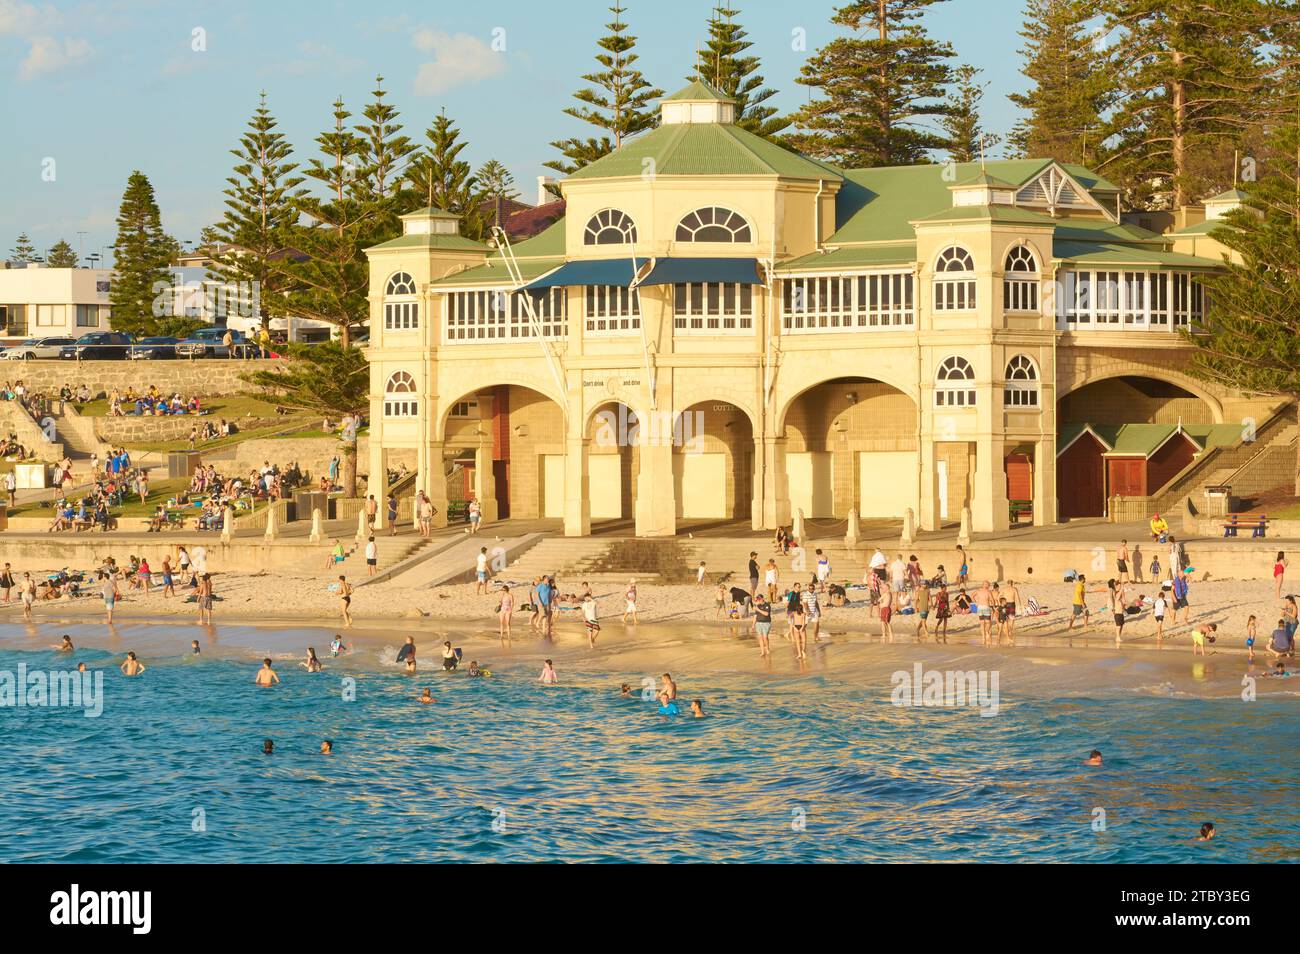 Beaucoup de gens nagent et apprécient Cottesloe Beach en face du bâtiment Indiana Teahouse par une chaude journée de fin de printemps, Perth, Australie occidentale. Banque D'Images